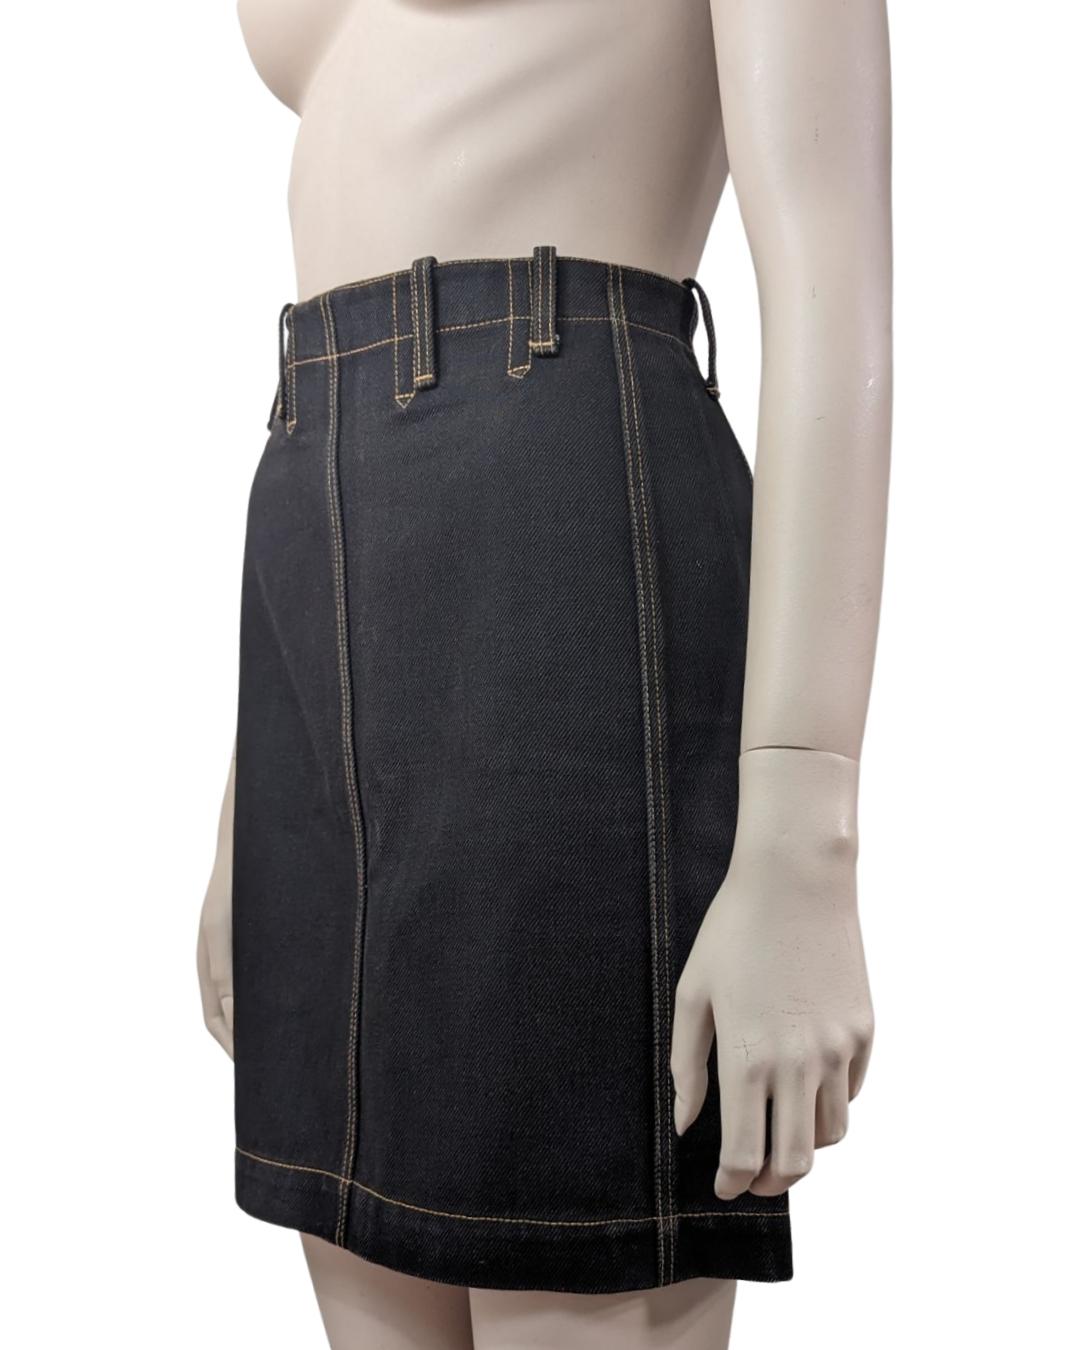 Azzedine Alaïa S/S 1991 High Waist Lace-up Denim Skirt For Sale 1